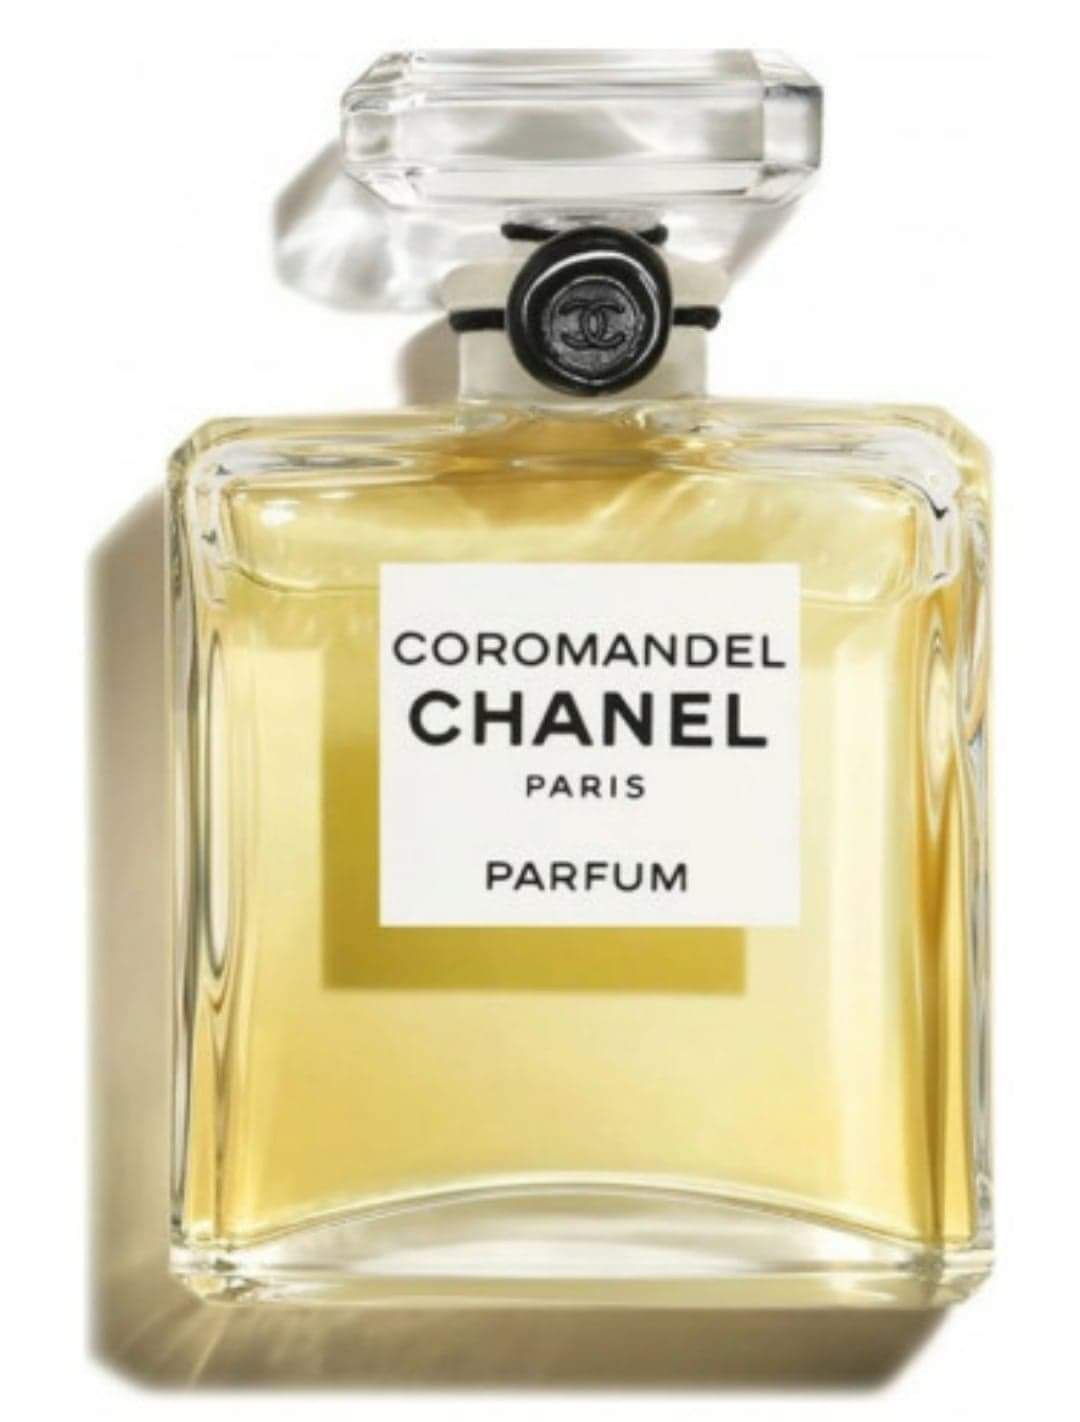 Chanel Coromandel 34ml woman